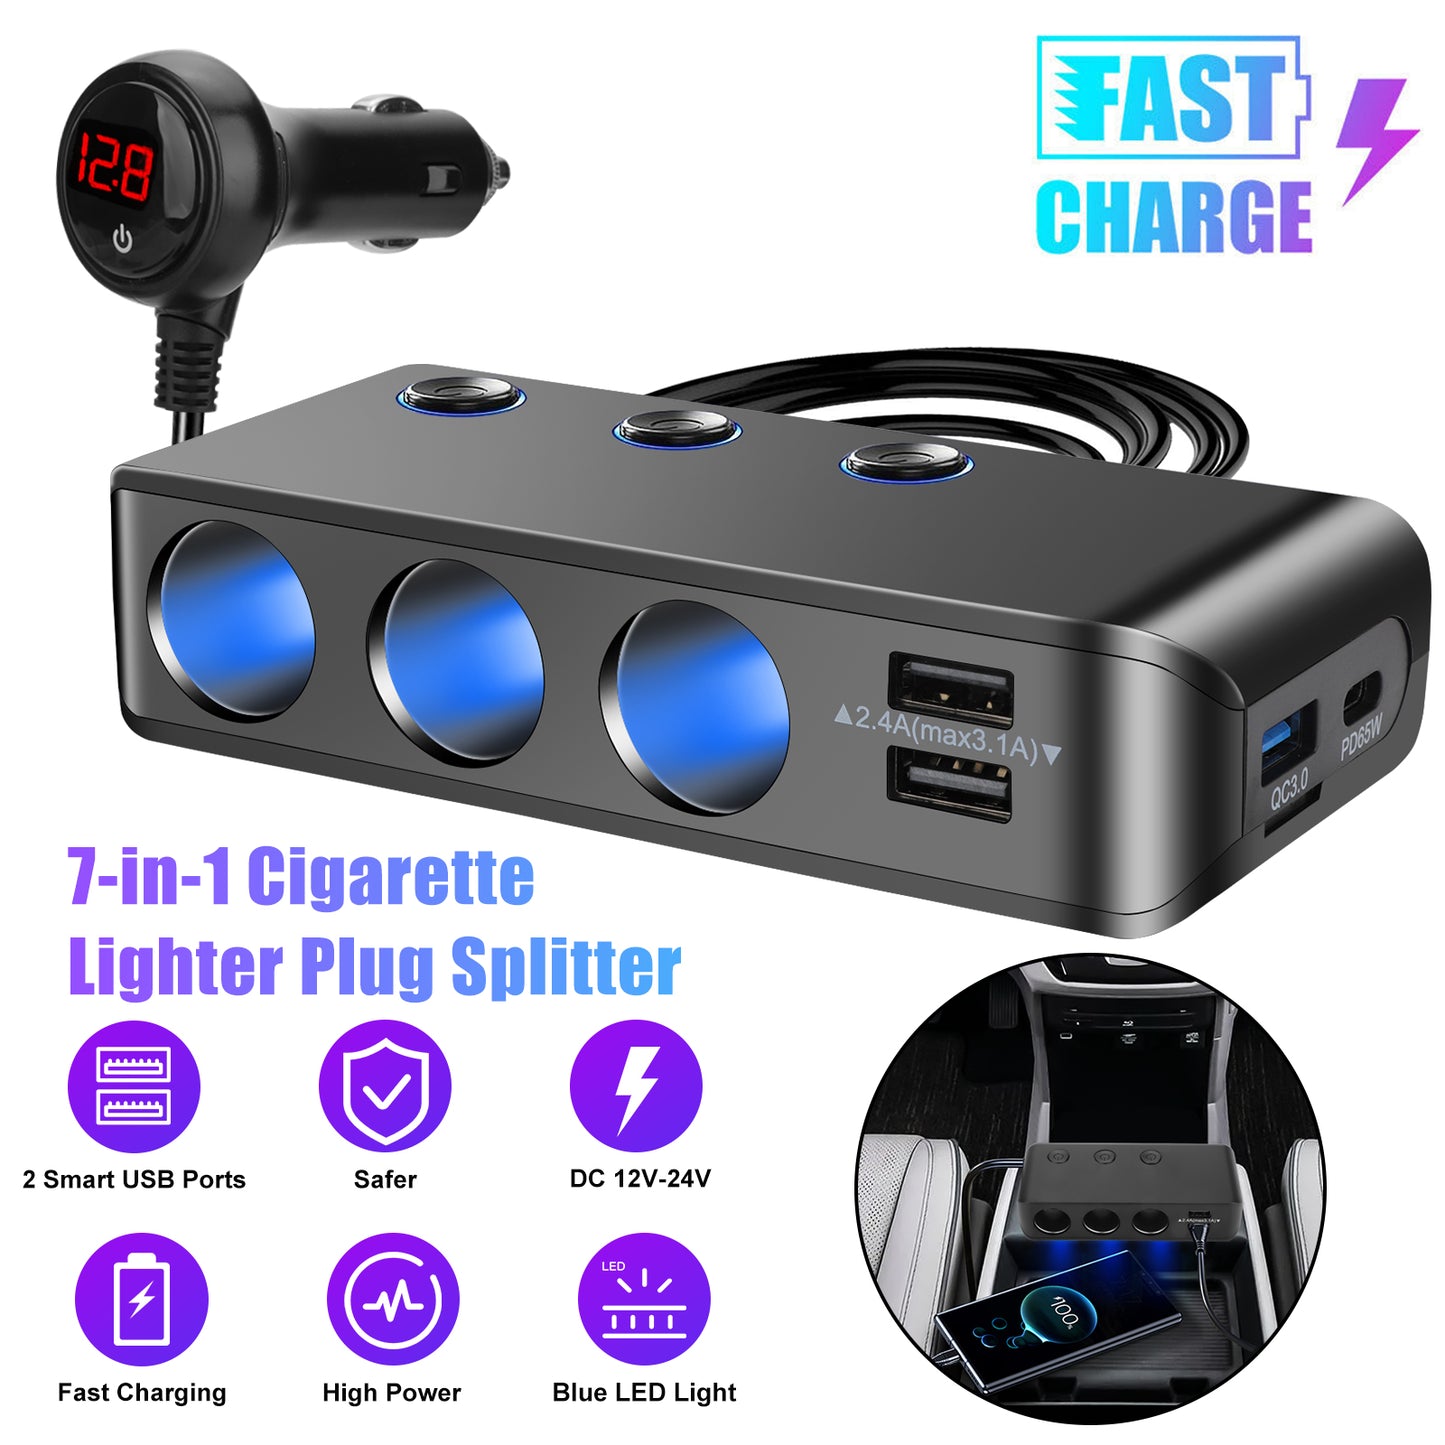 7-in-1 3 Way Cigarette Lighter Socket Splitter Power Adapter - LED Display Voltage 120W 12V/24V 3 USB +PD Car Charger Outlet for GPS Dash Cam Phone (Black)